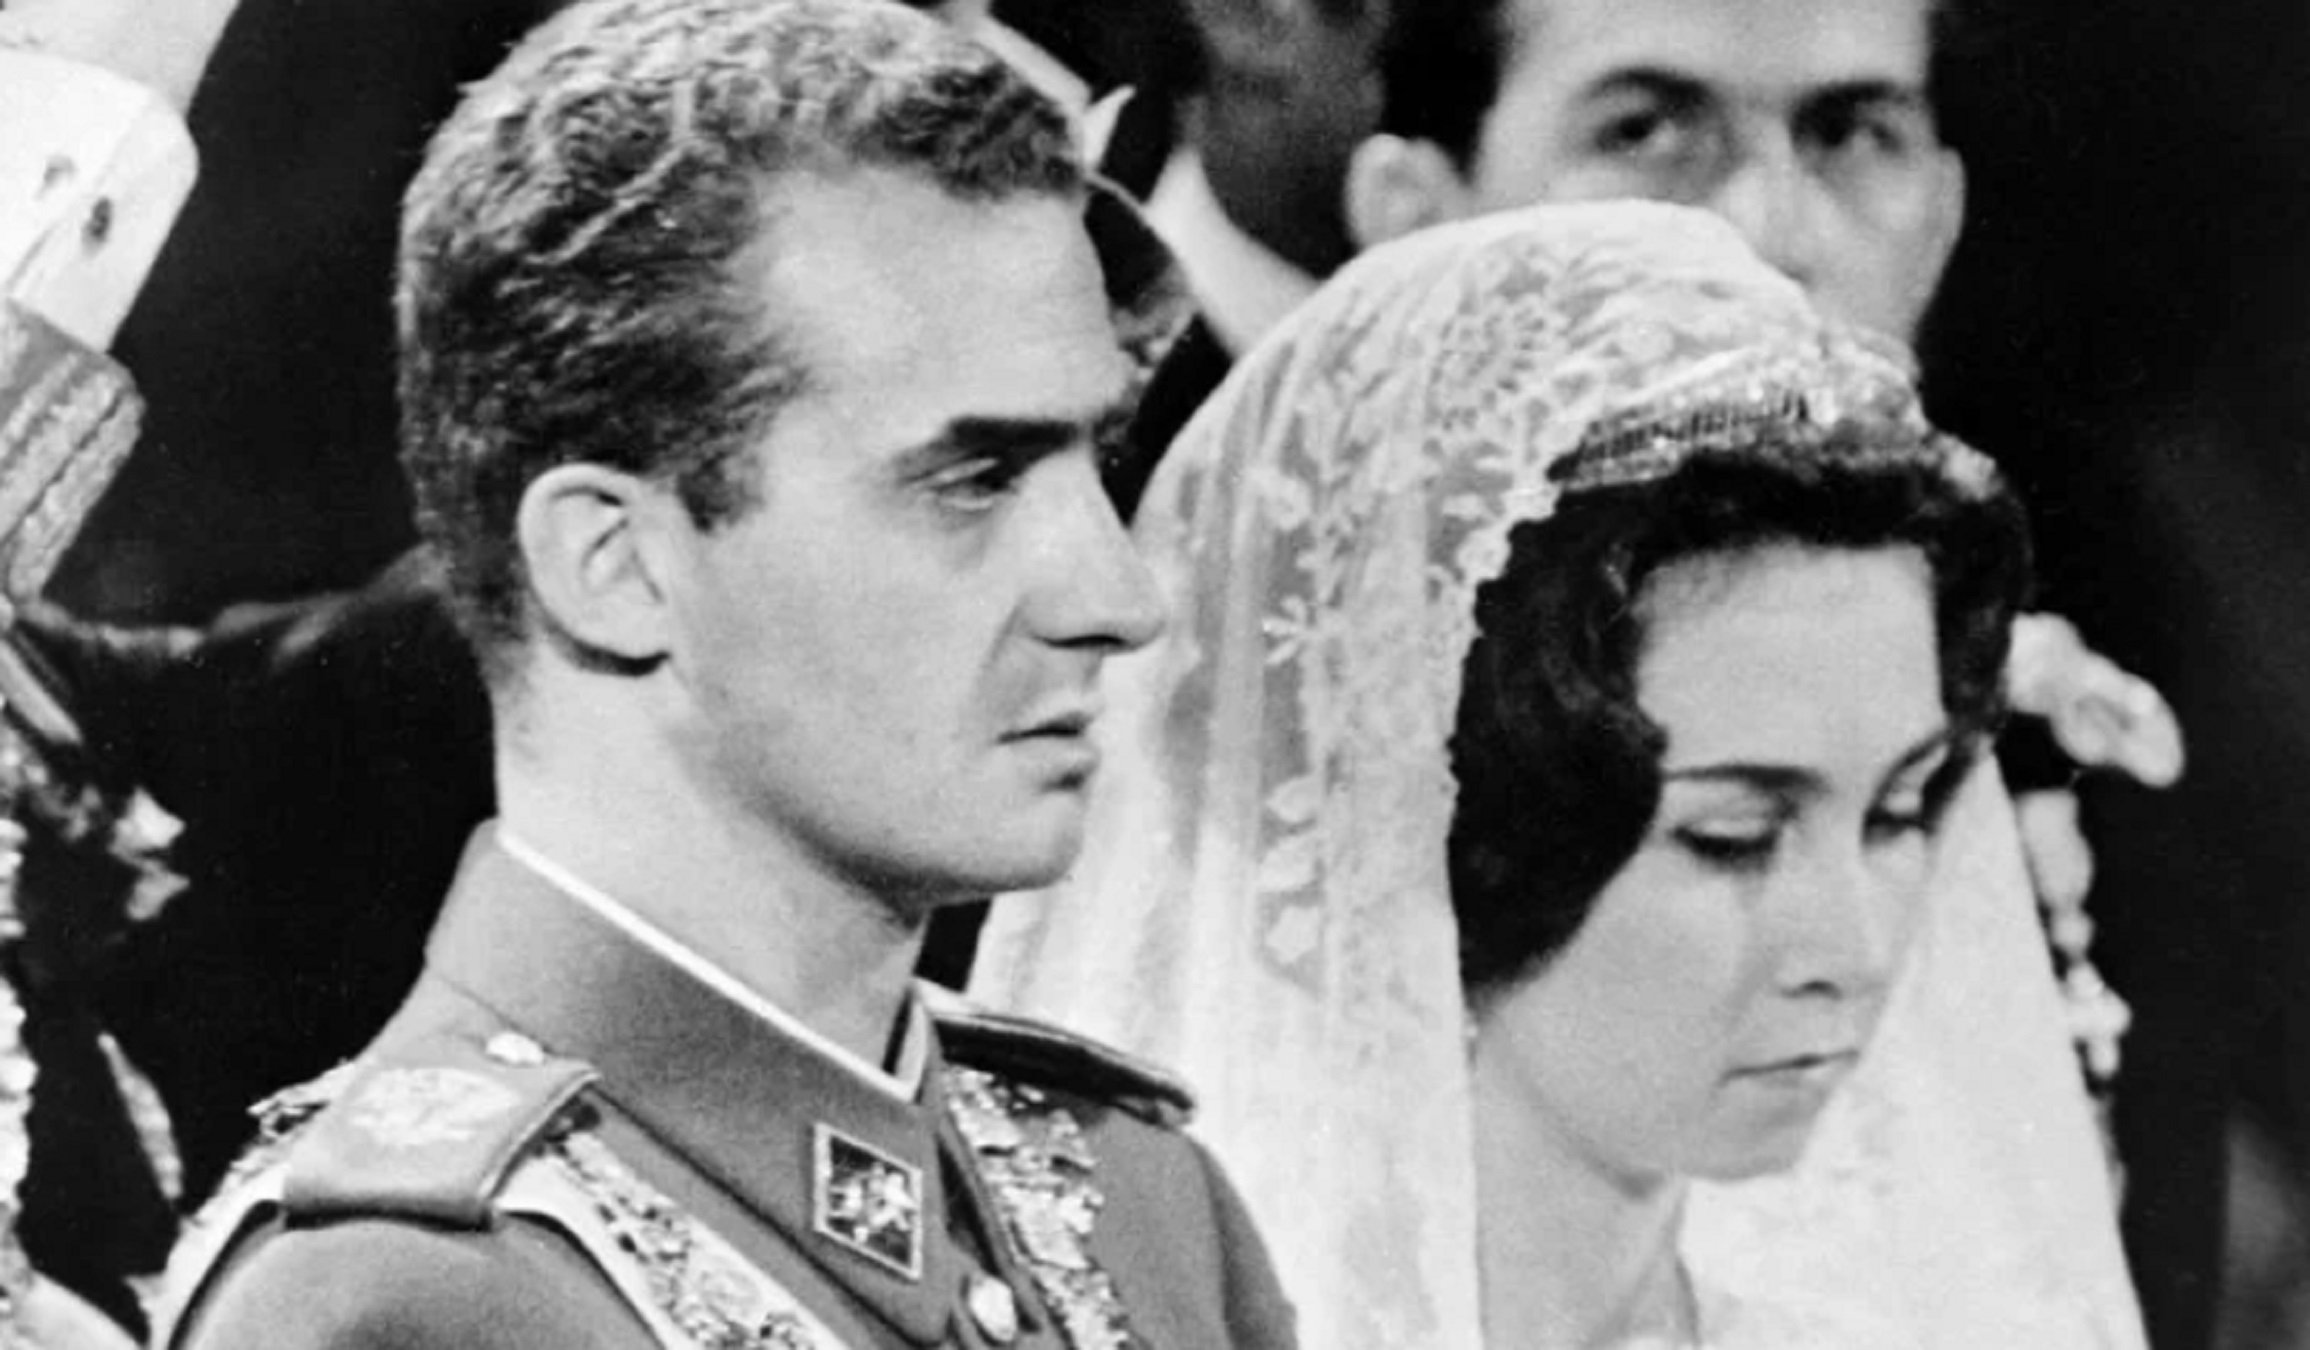 Les llàgrimes de Sofia (de pena) al casament amb Joan Carles avui fa 57 anys